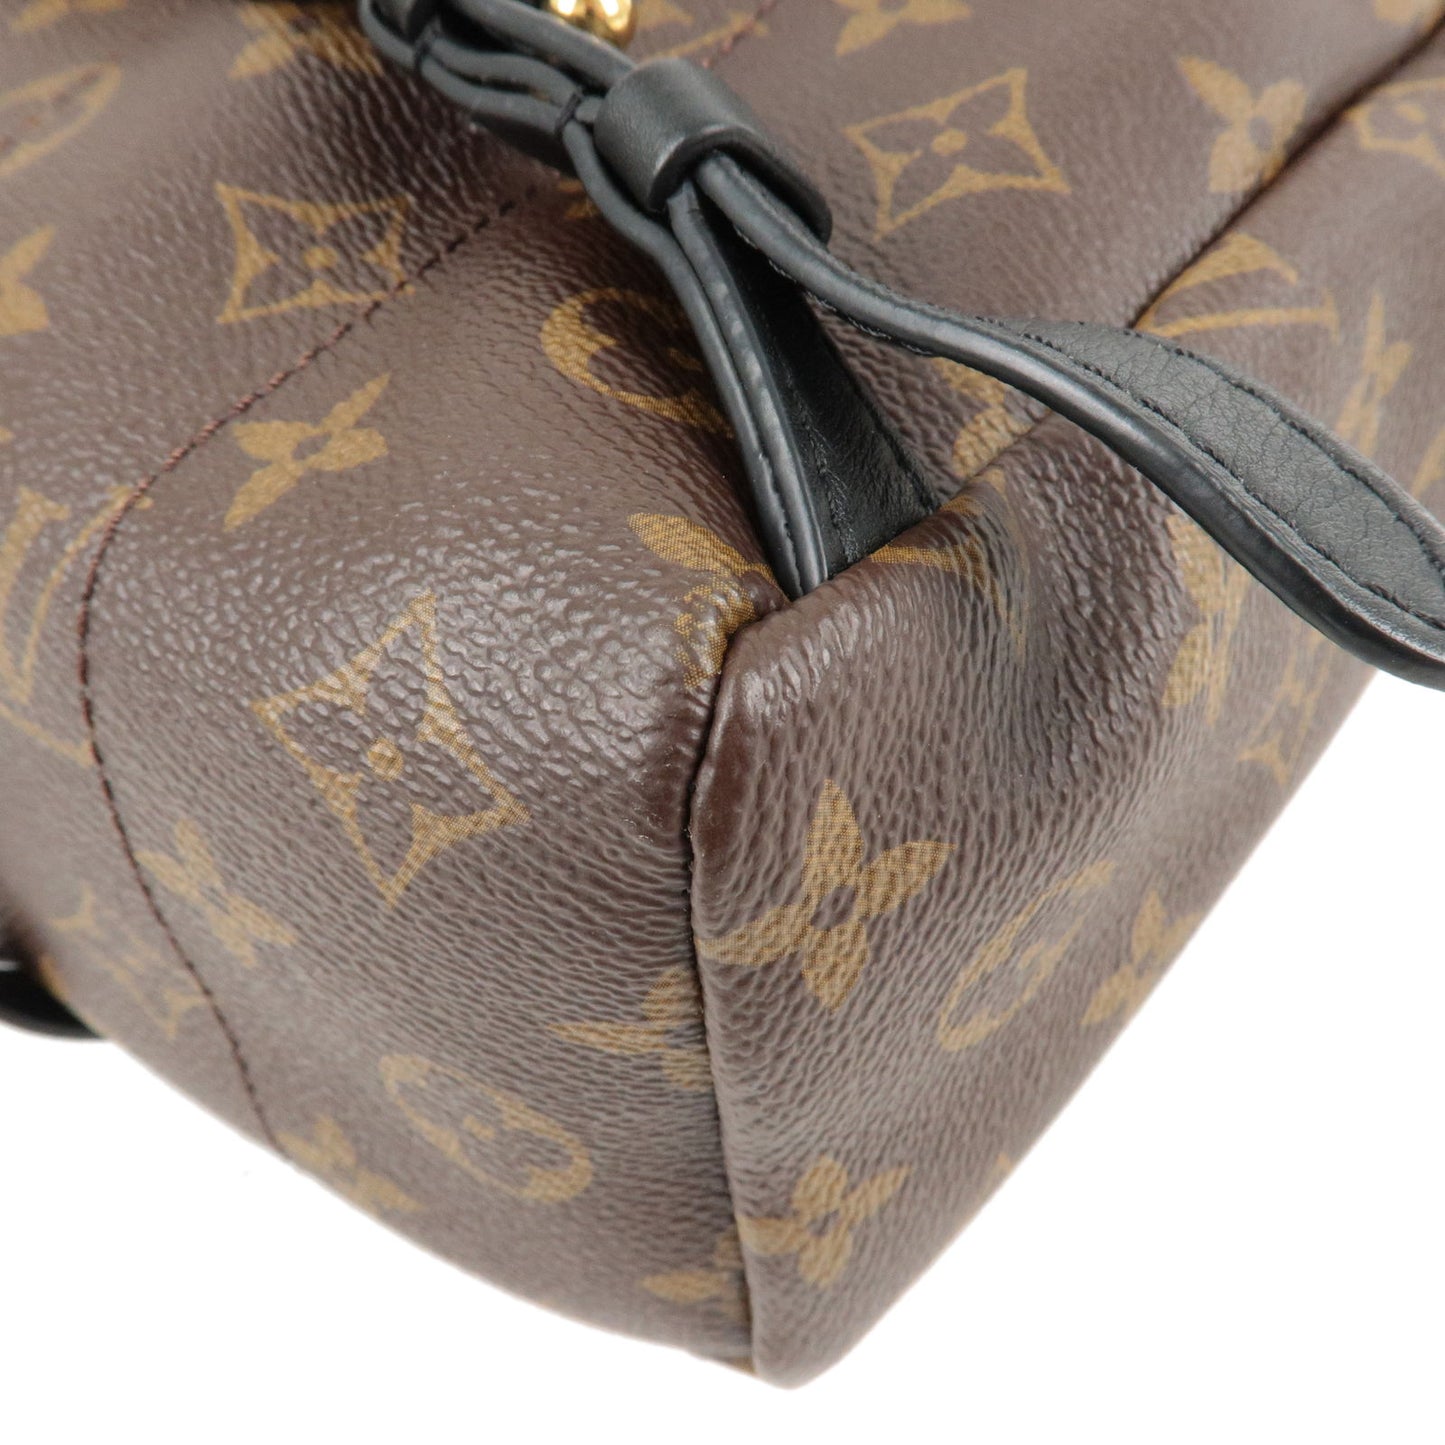 Louis Vuitton Palm Springs Backpack Size PM Noir M41560 Monogram